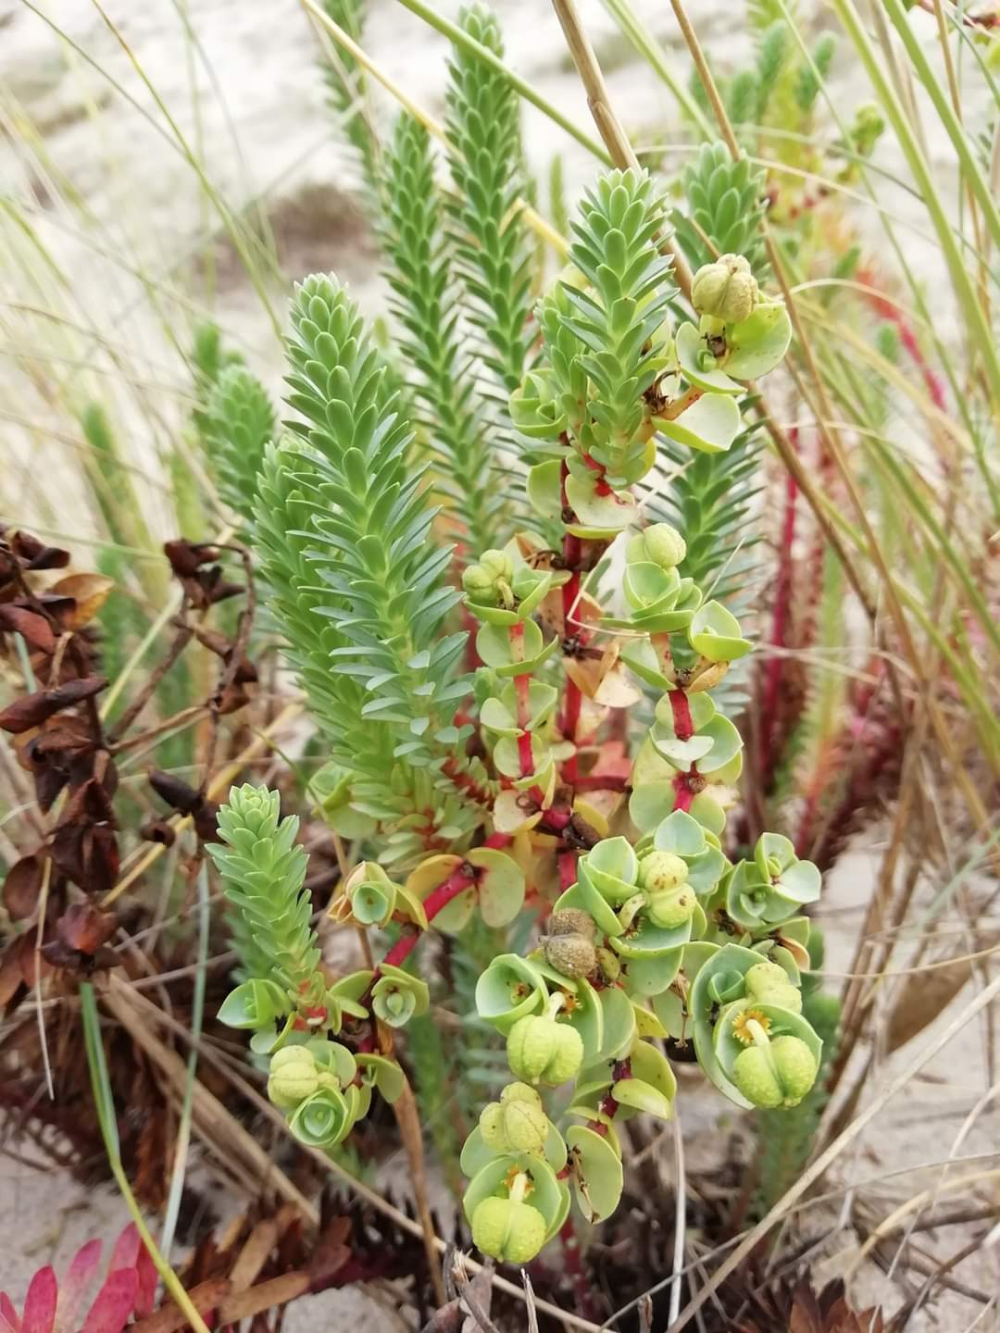 Tártago de mar - Euphorbia paralias L. 